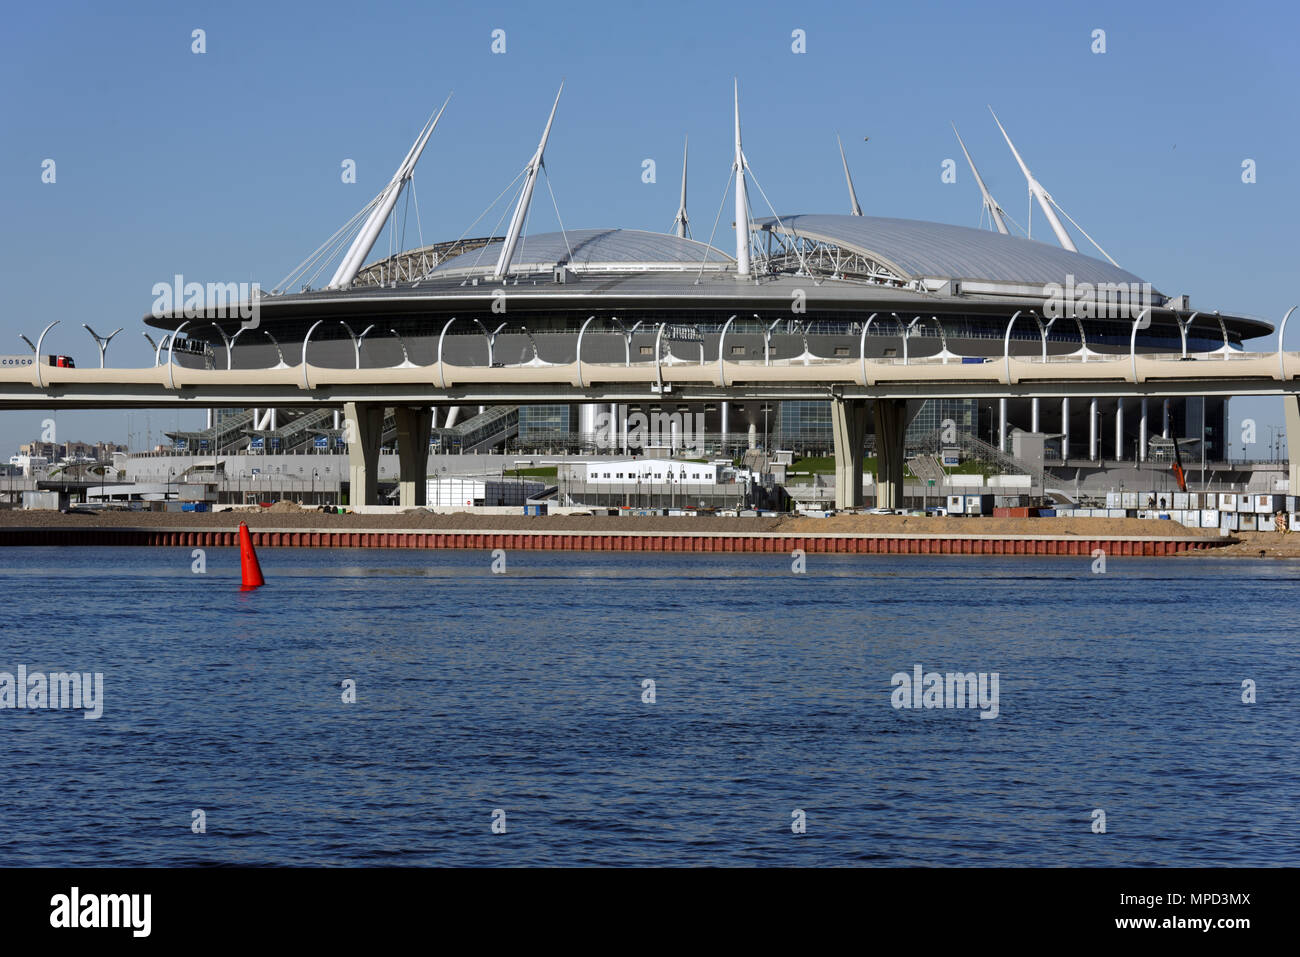 St. Petersburg, Russland - Mai 10, 2018 :: Blick auf das Stadion Piter Arena einen Monat vor Beginn der FIFA WM 2018. Das erste Match der Wm auf der stadi Stockfoto